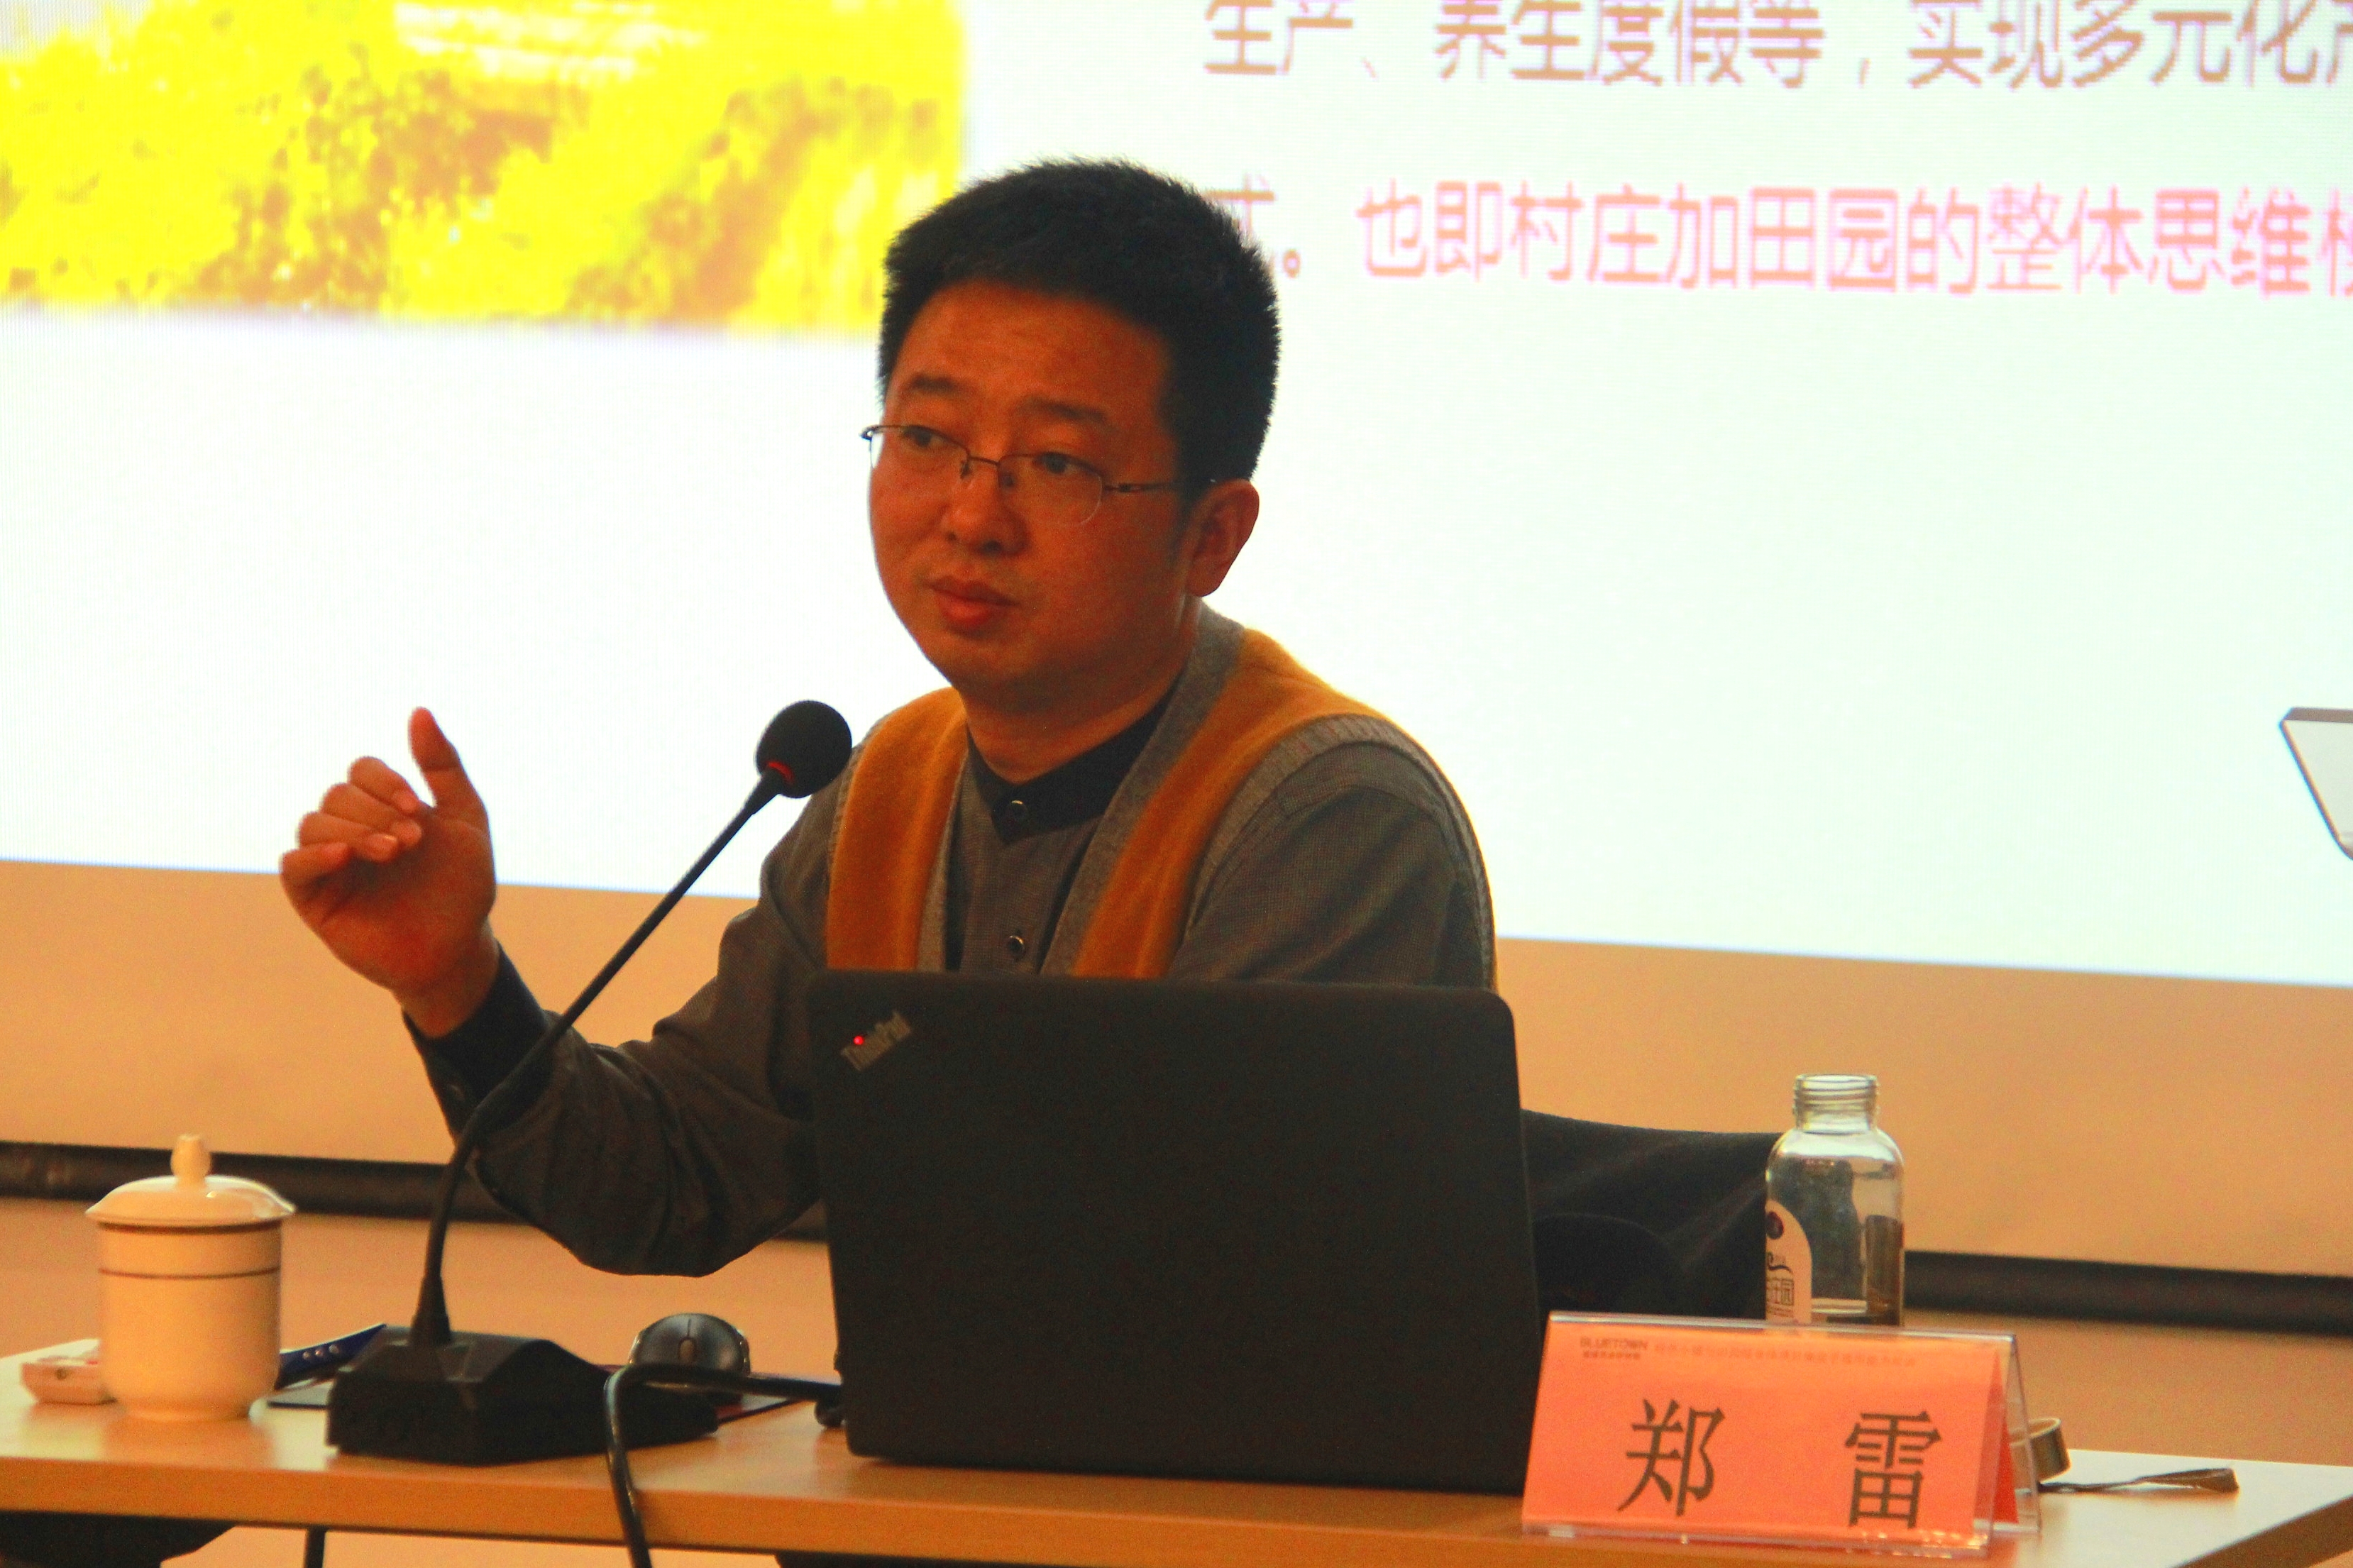 郑雷不动产运营专家浙江汇创文化旅游发展有限公司董事长专注于创新